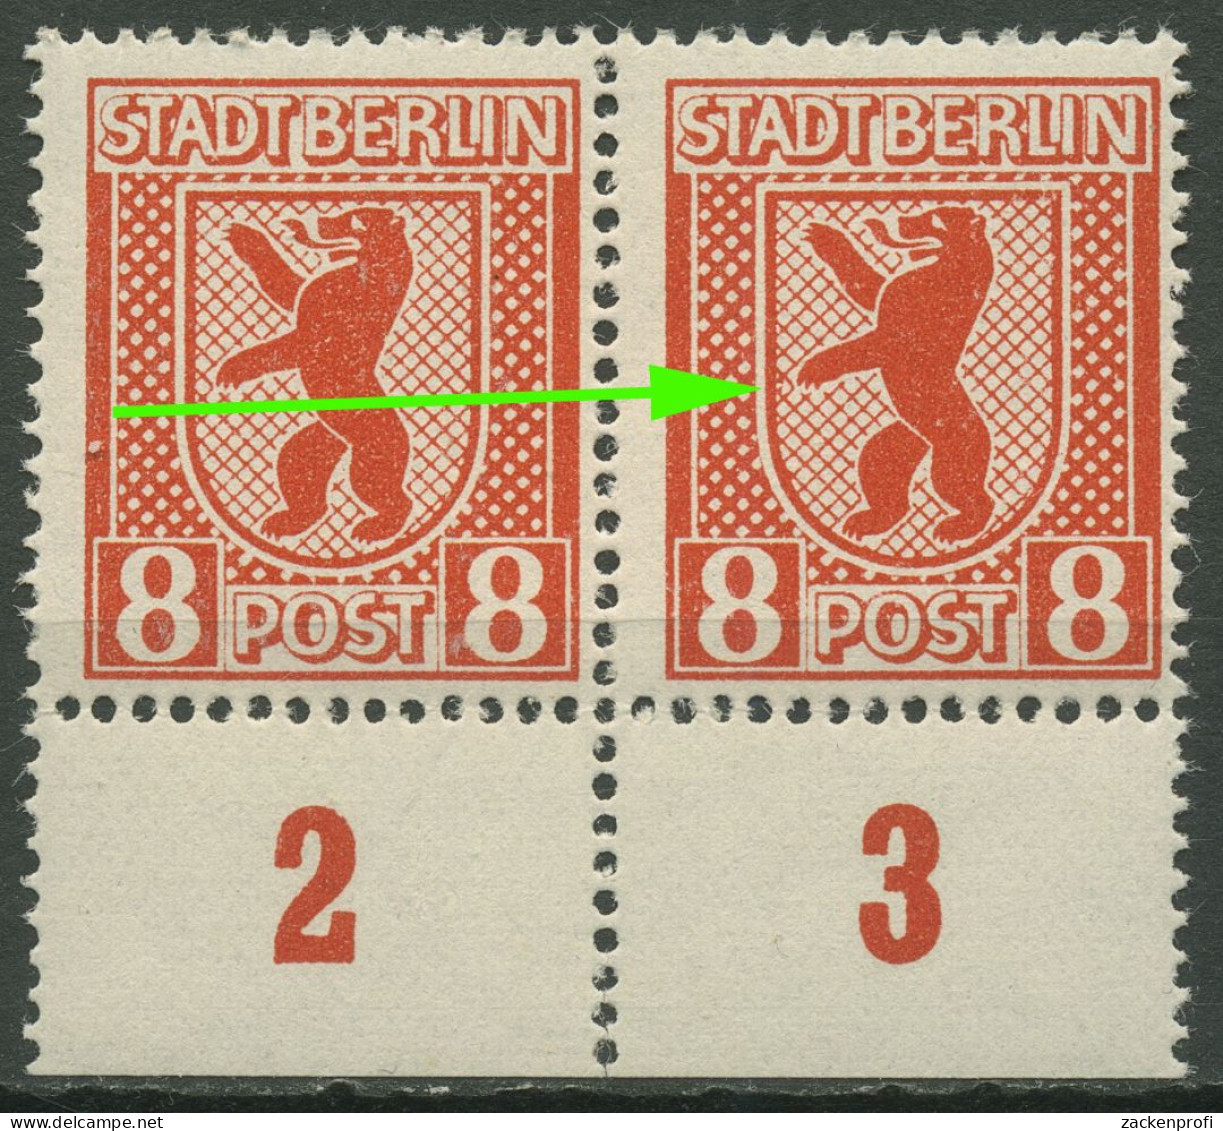 SBZ Berlin & Brandenburg 1945 Freimarke Mit Plattenfehler 3 A Vx V Postfrisch - Berlin & Brandebourg